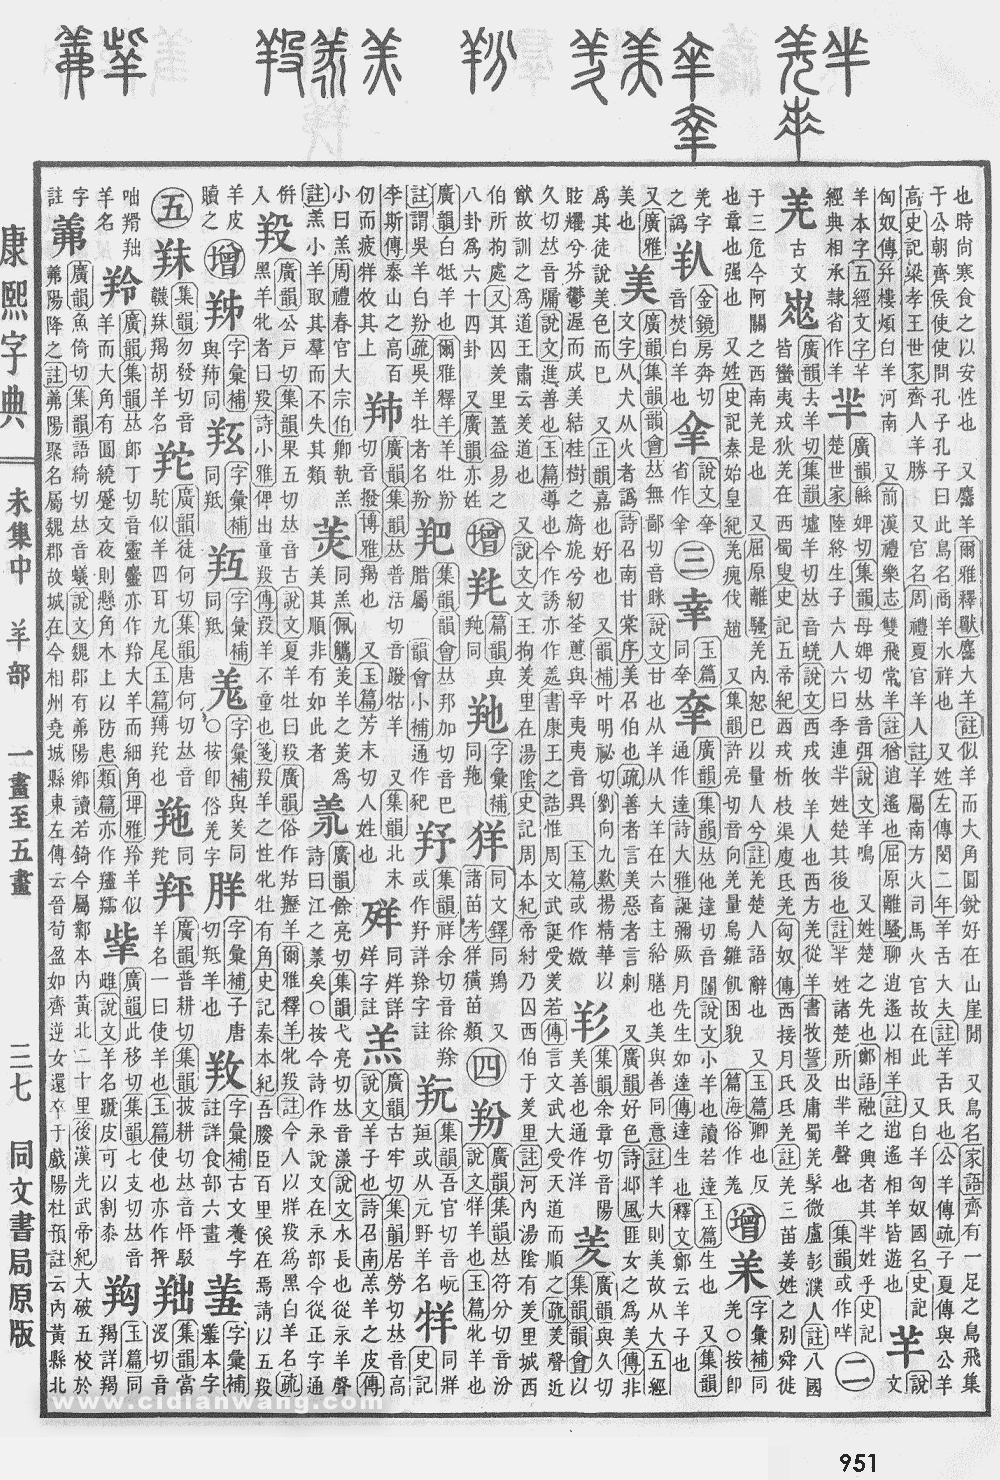 康熙字典掃描版第951頁